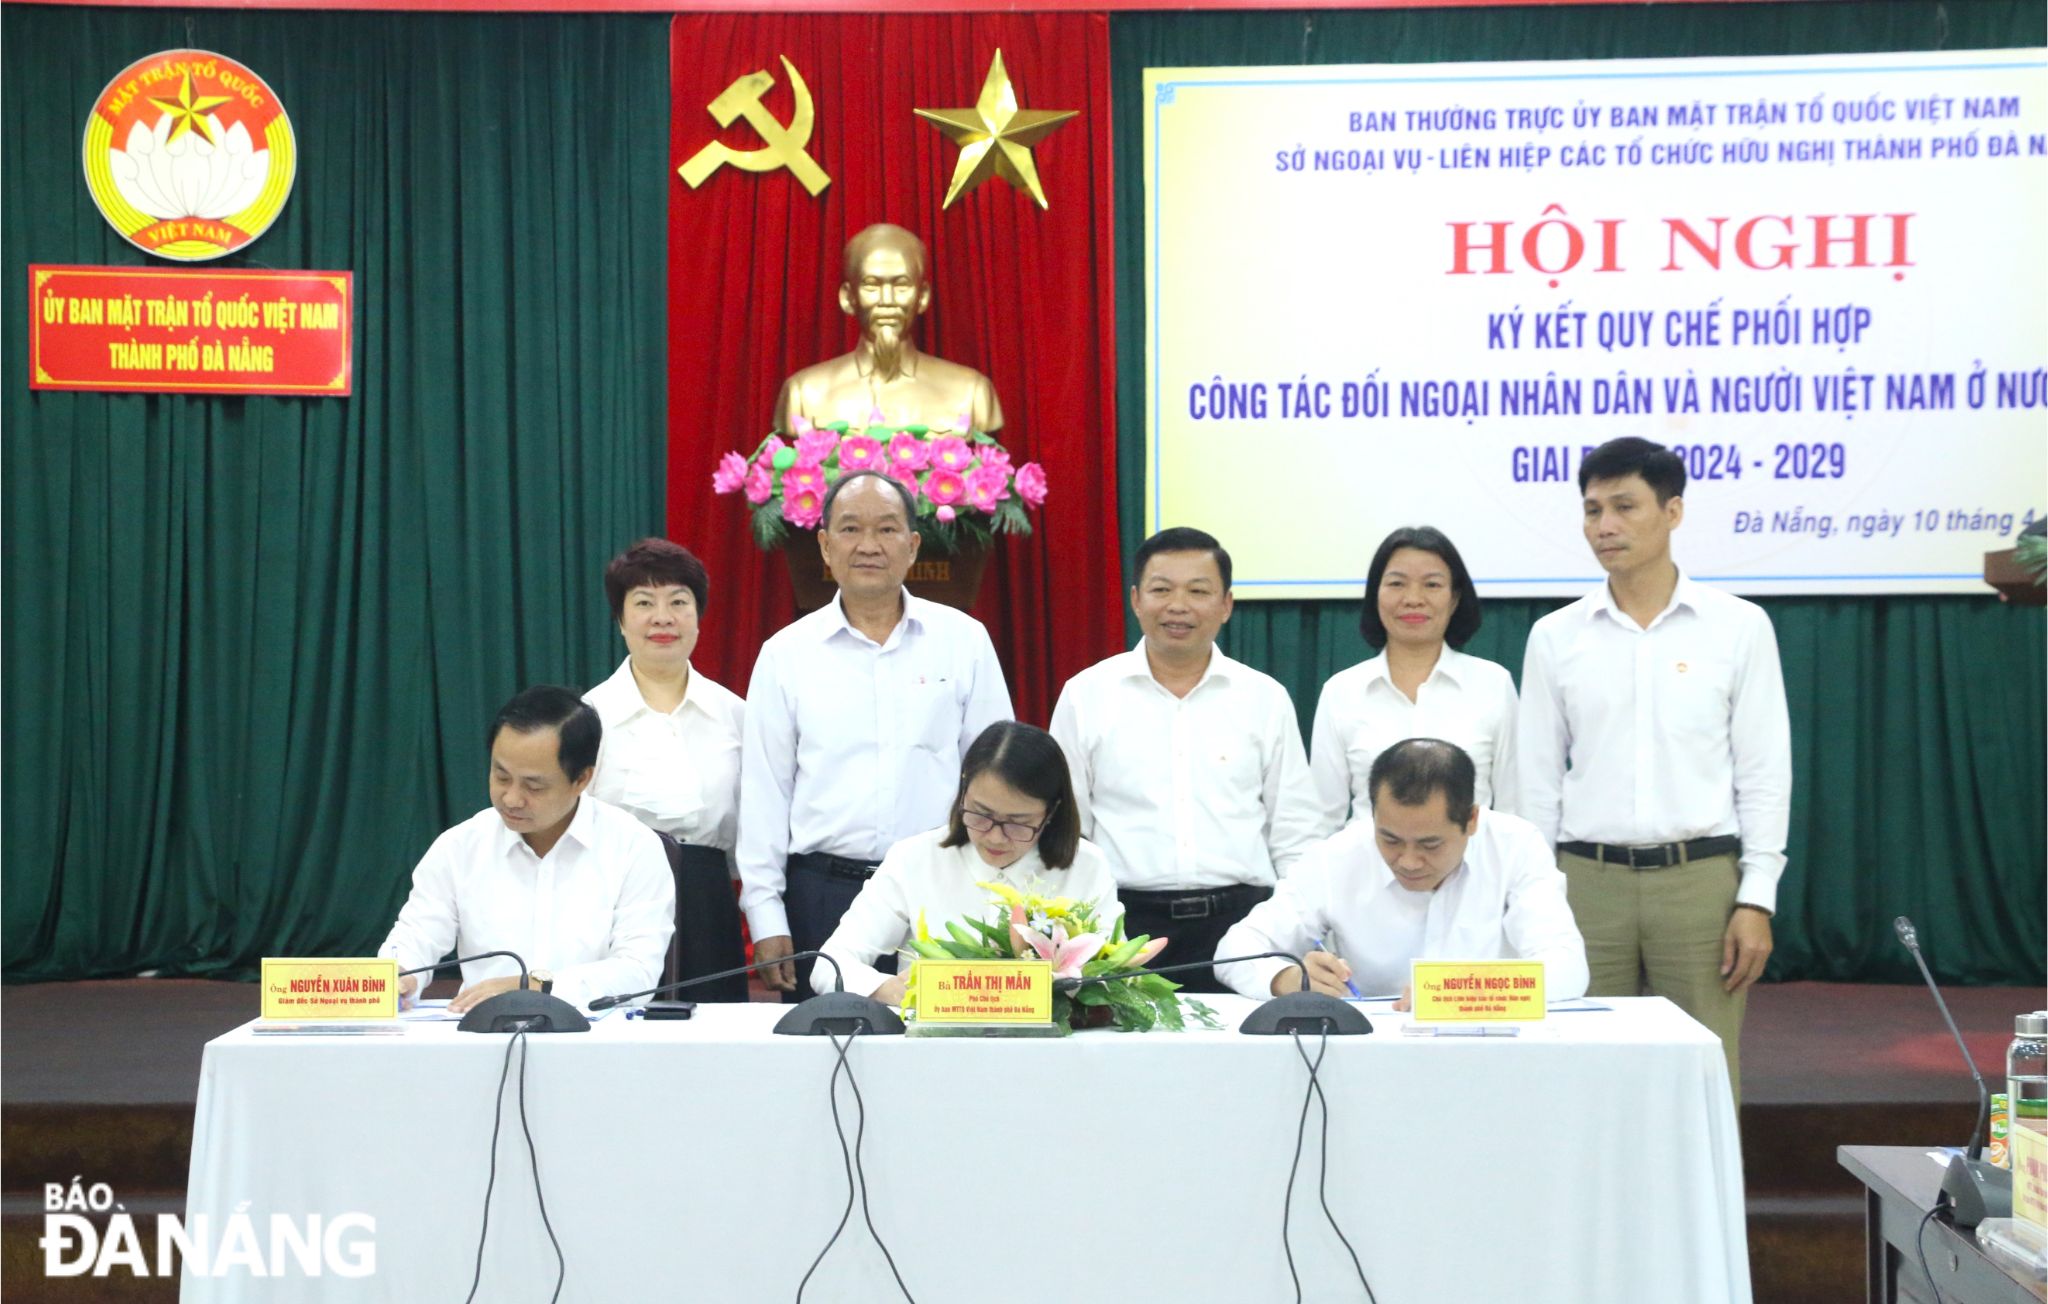 Đại diện lãnh đạo 3 cơ quan ký kết quy chế phối hợp công tác đối ngoại nhân dân và người Việt Nam ở nước ngoài giai đoạn 2024-2029. Ảnh: T.PHƯƠNG